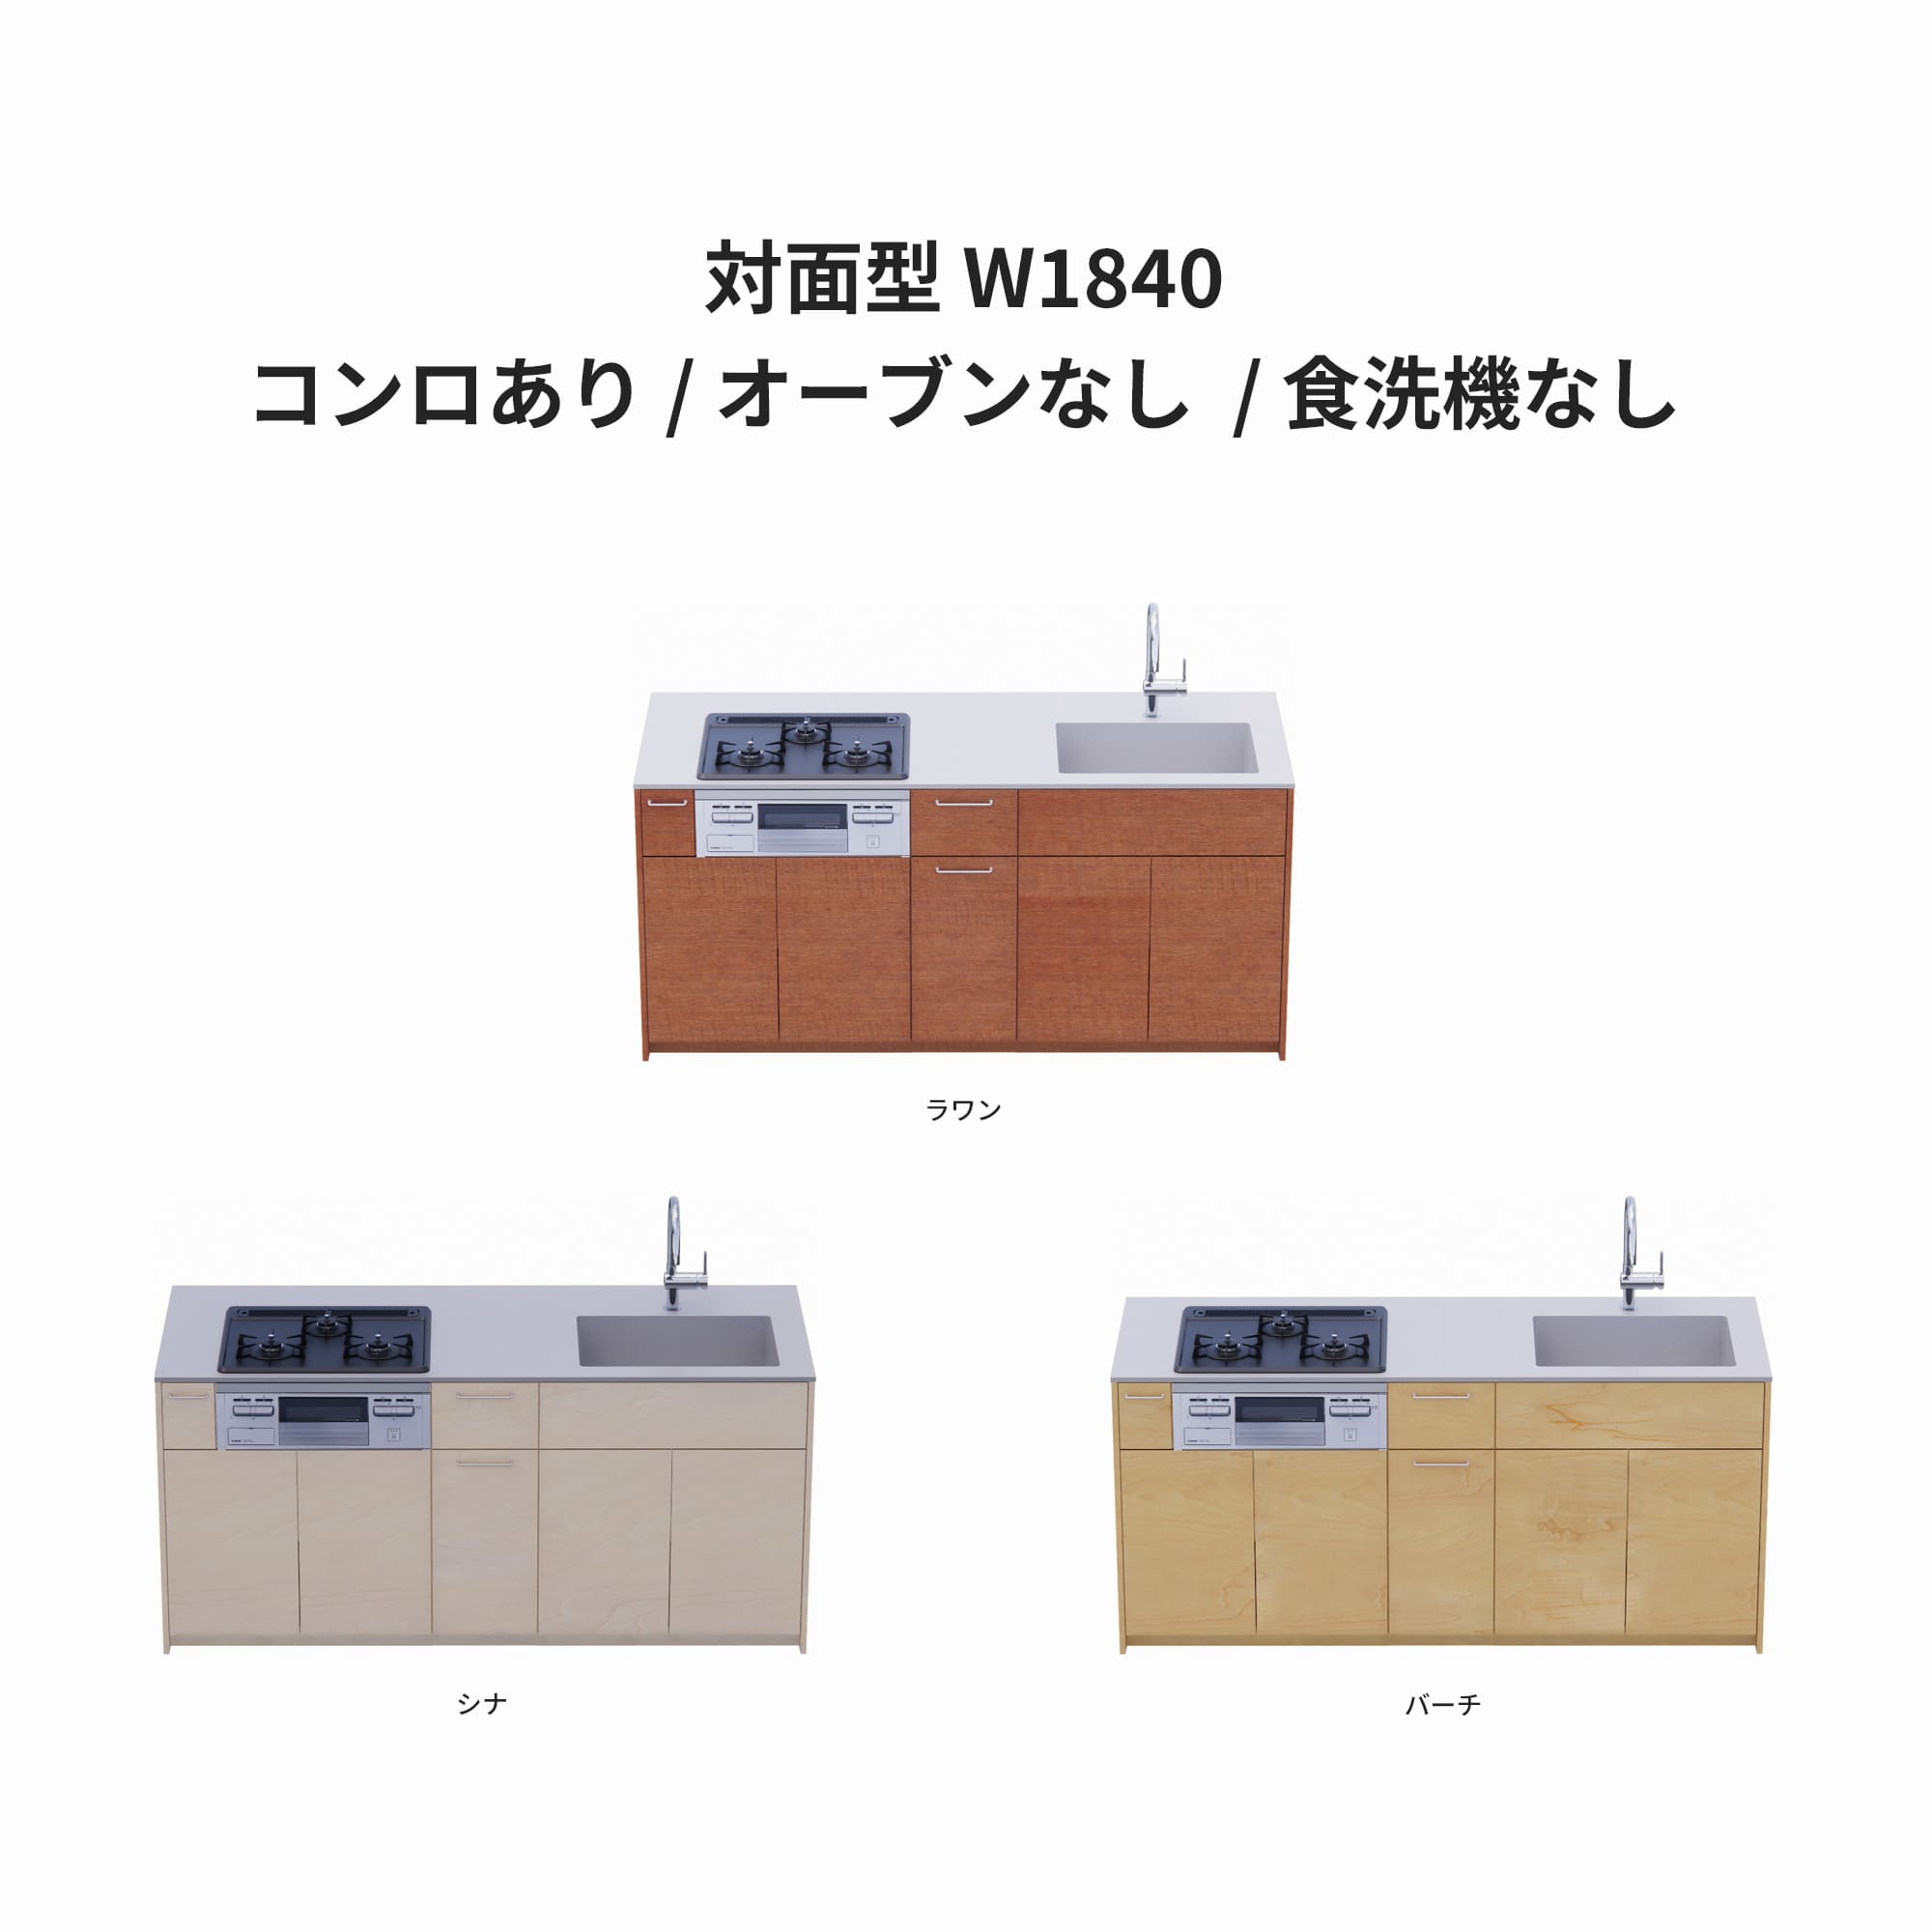 木製システムキッチン 対面型 W1840・コンロあり / オーブンなし / 食洗機なし KB-KC022-29-G183 ラワン・シナ・バーチが選択できます